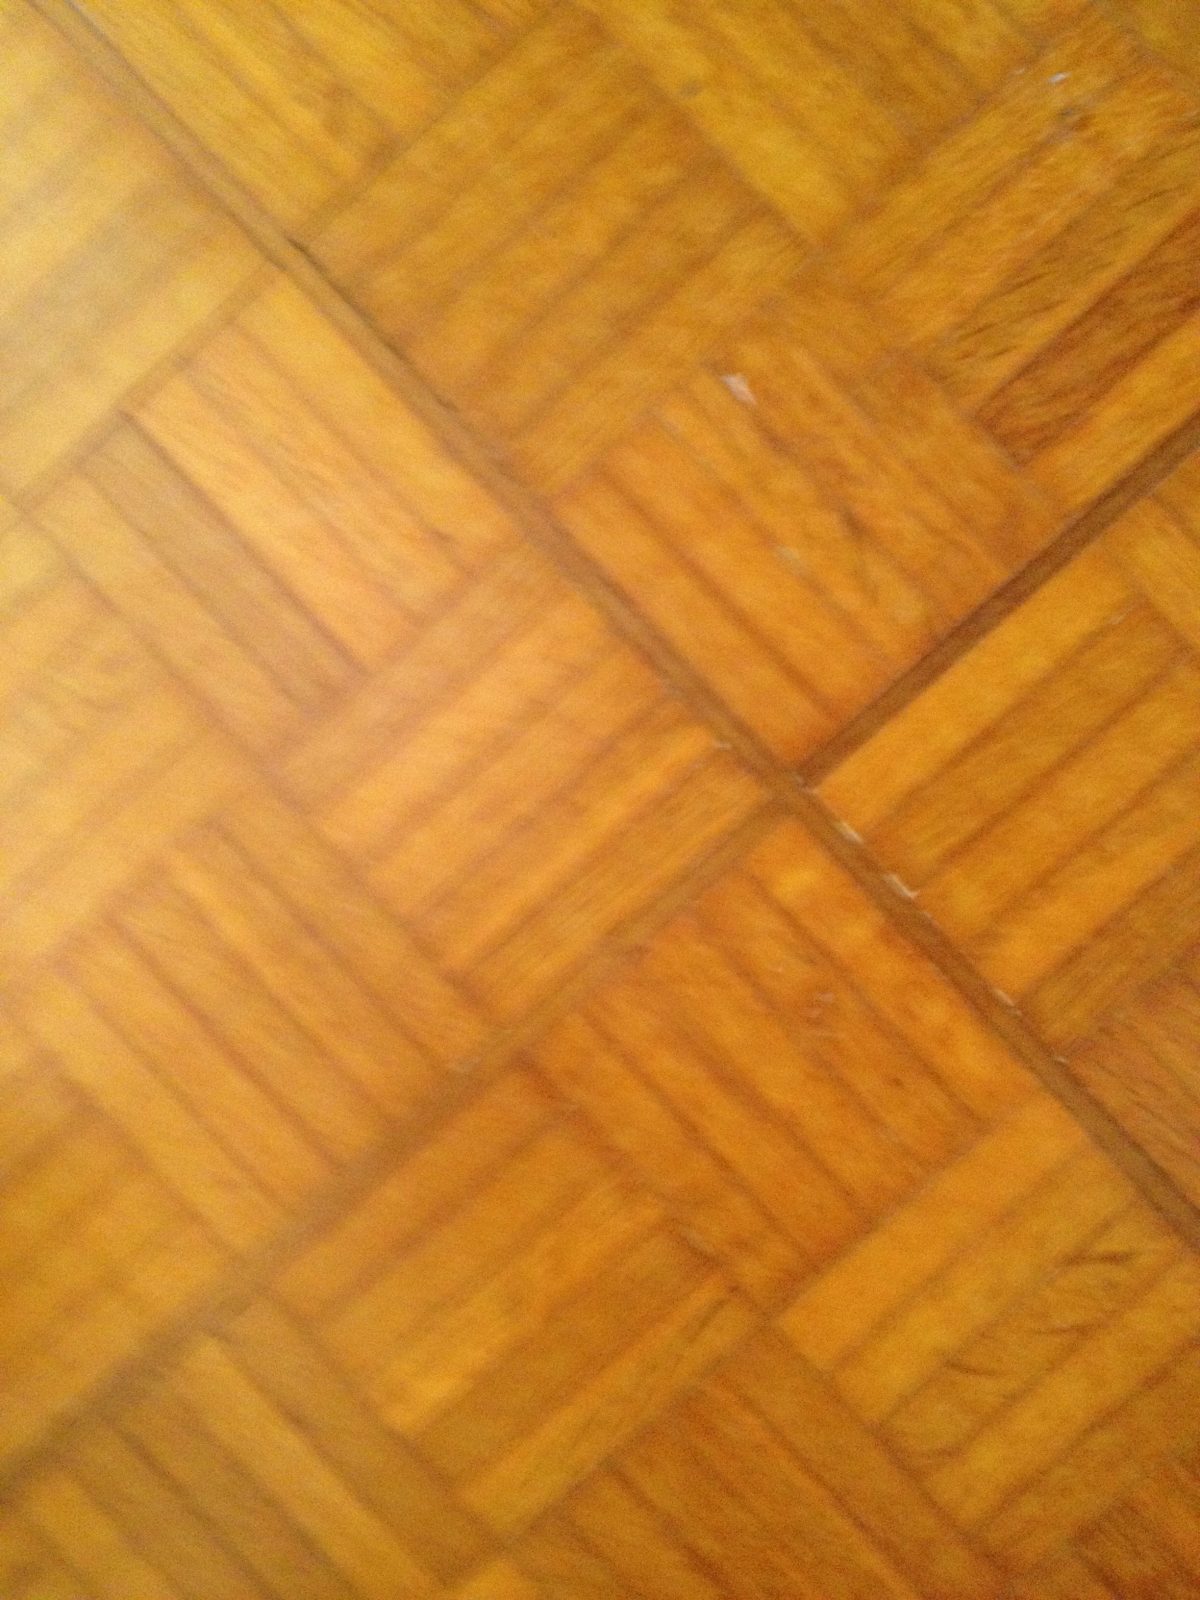 The original oak parquet flooring